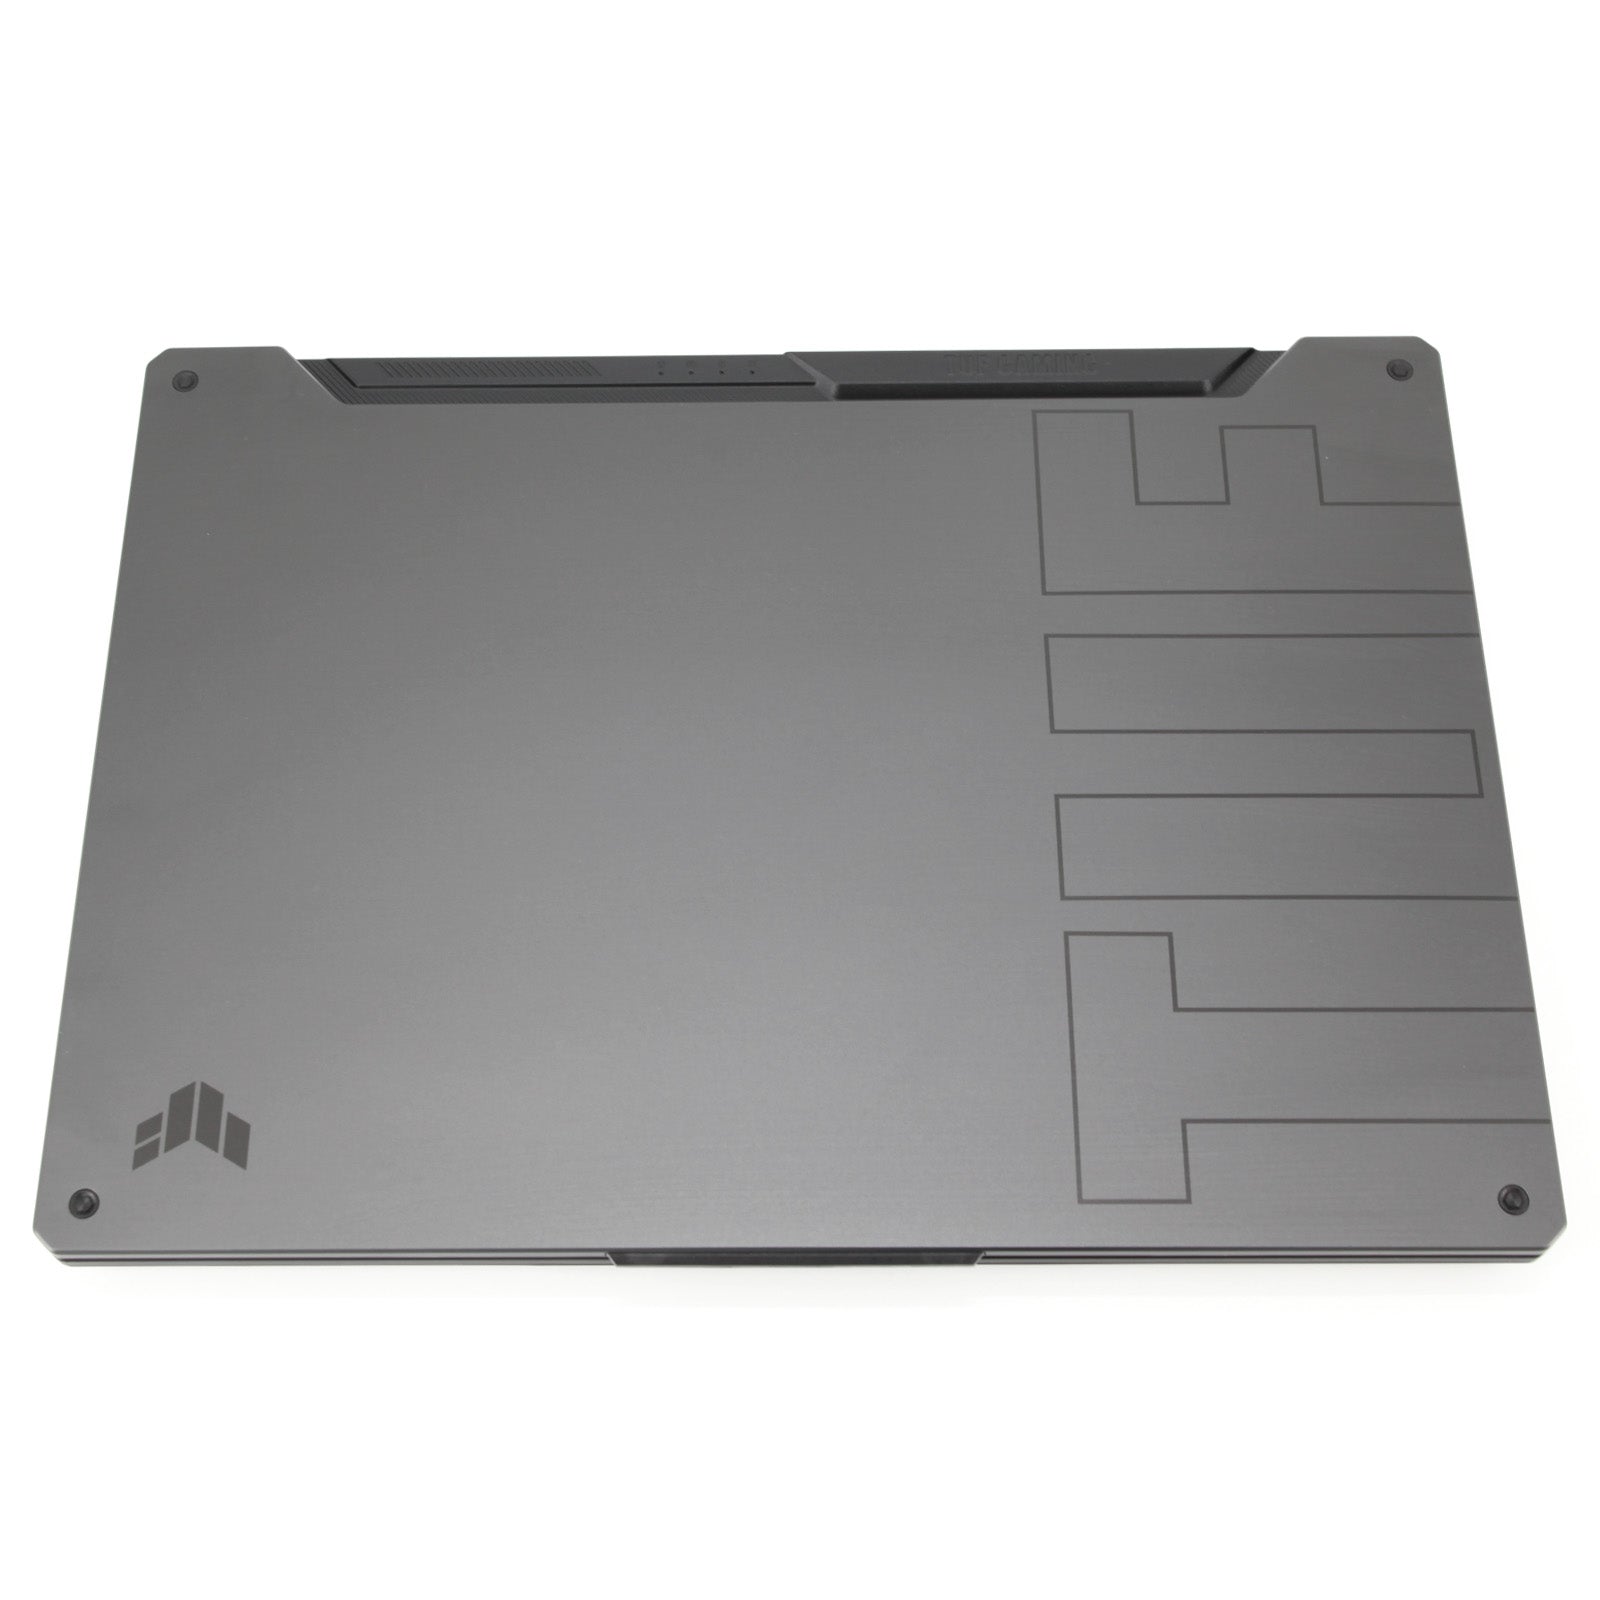 ASUS TUF Dash A15 15.6" Gaming Laptop: Ryzen 7 5800H, RTX 3070, 16GB RAM, 512GB - CruiseTech